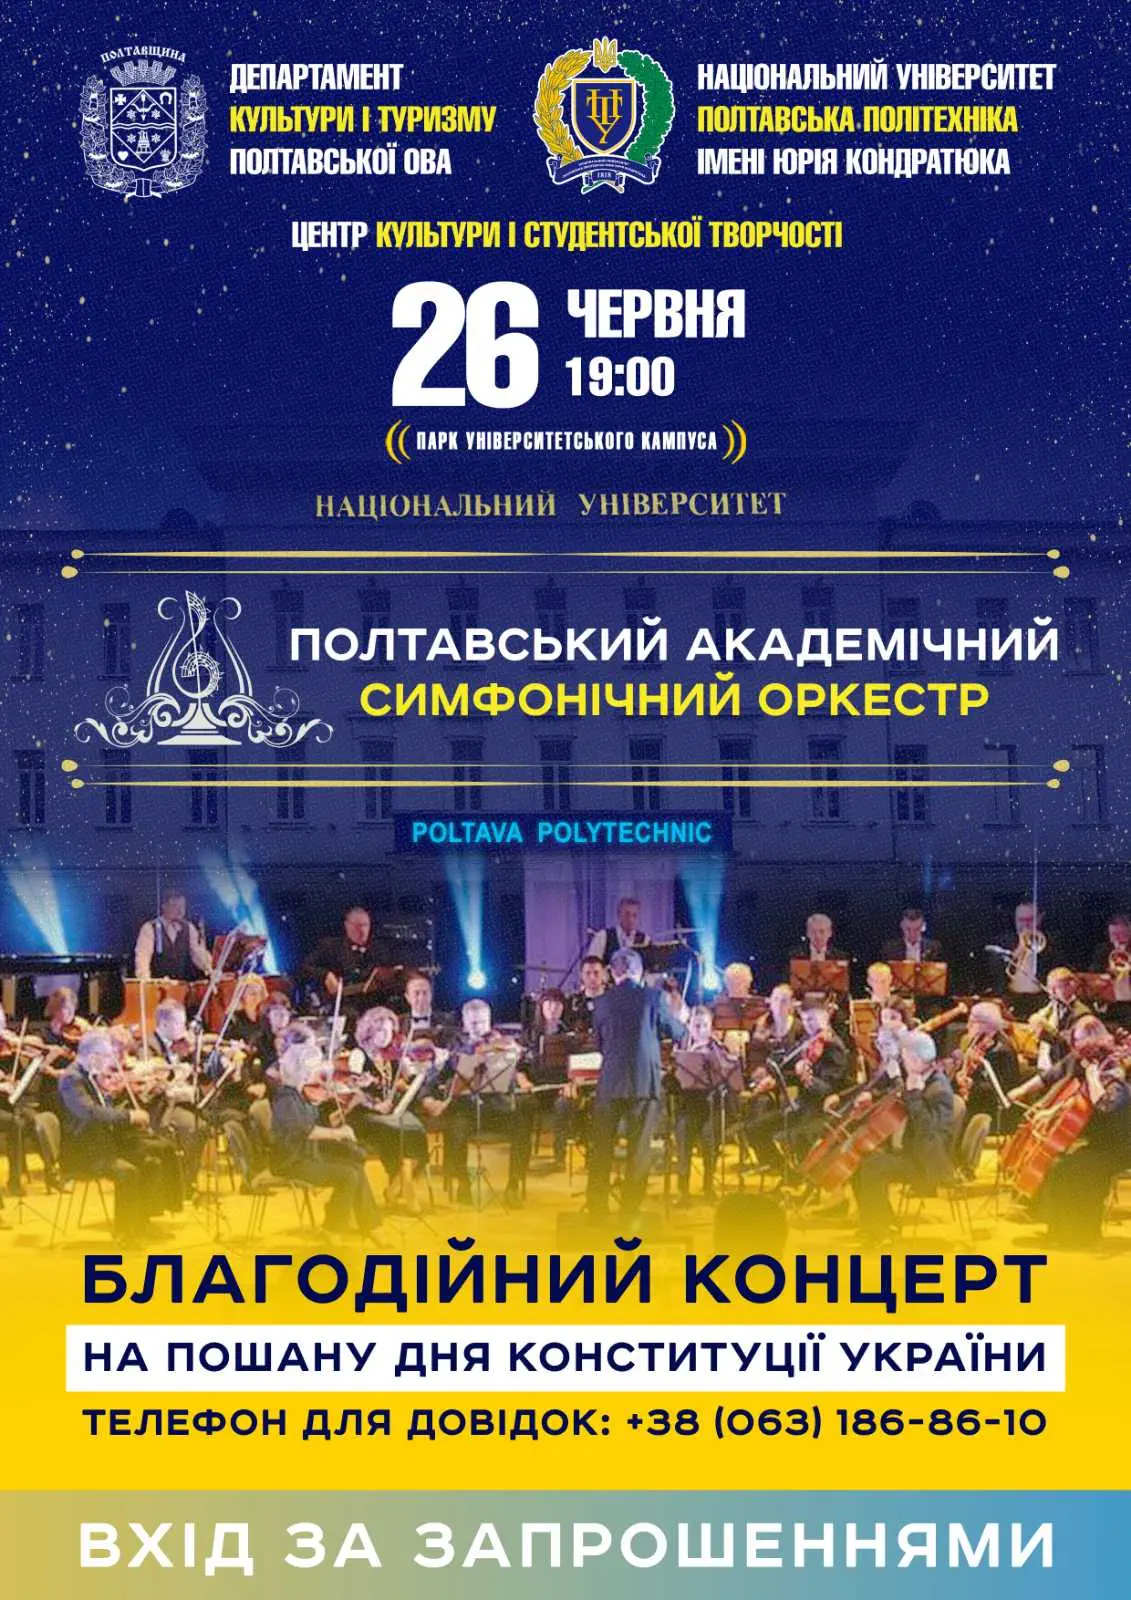 Полтавський академічний симфонічний оркестр виступить в університеті з благодійним концертом на підтримку ЗСУ